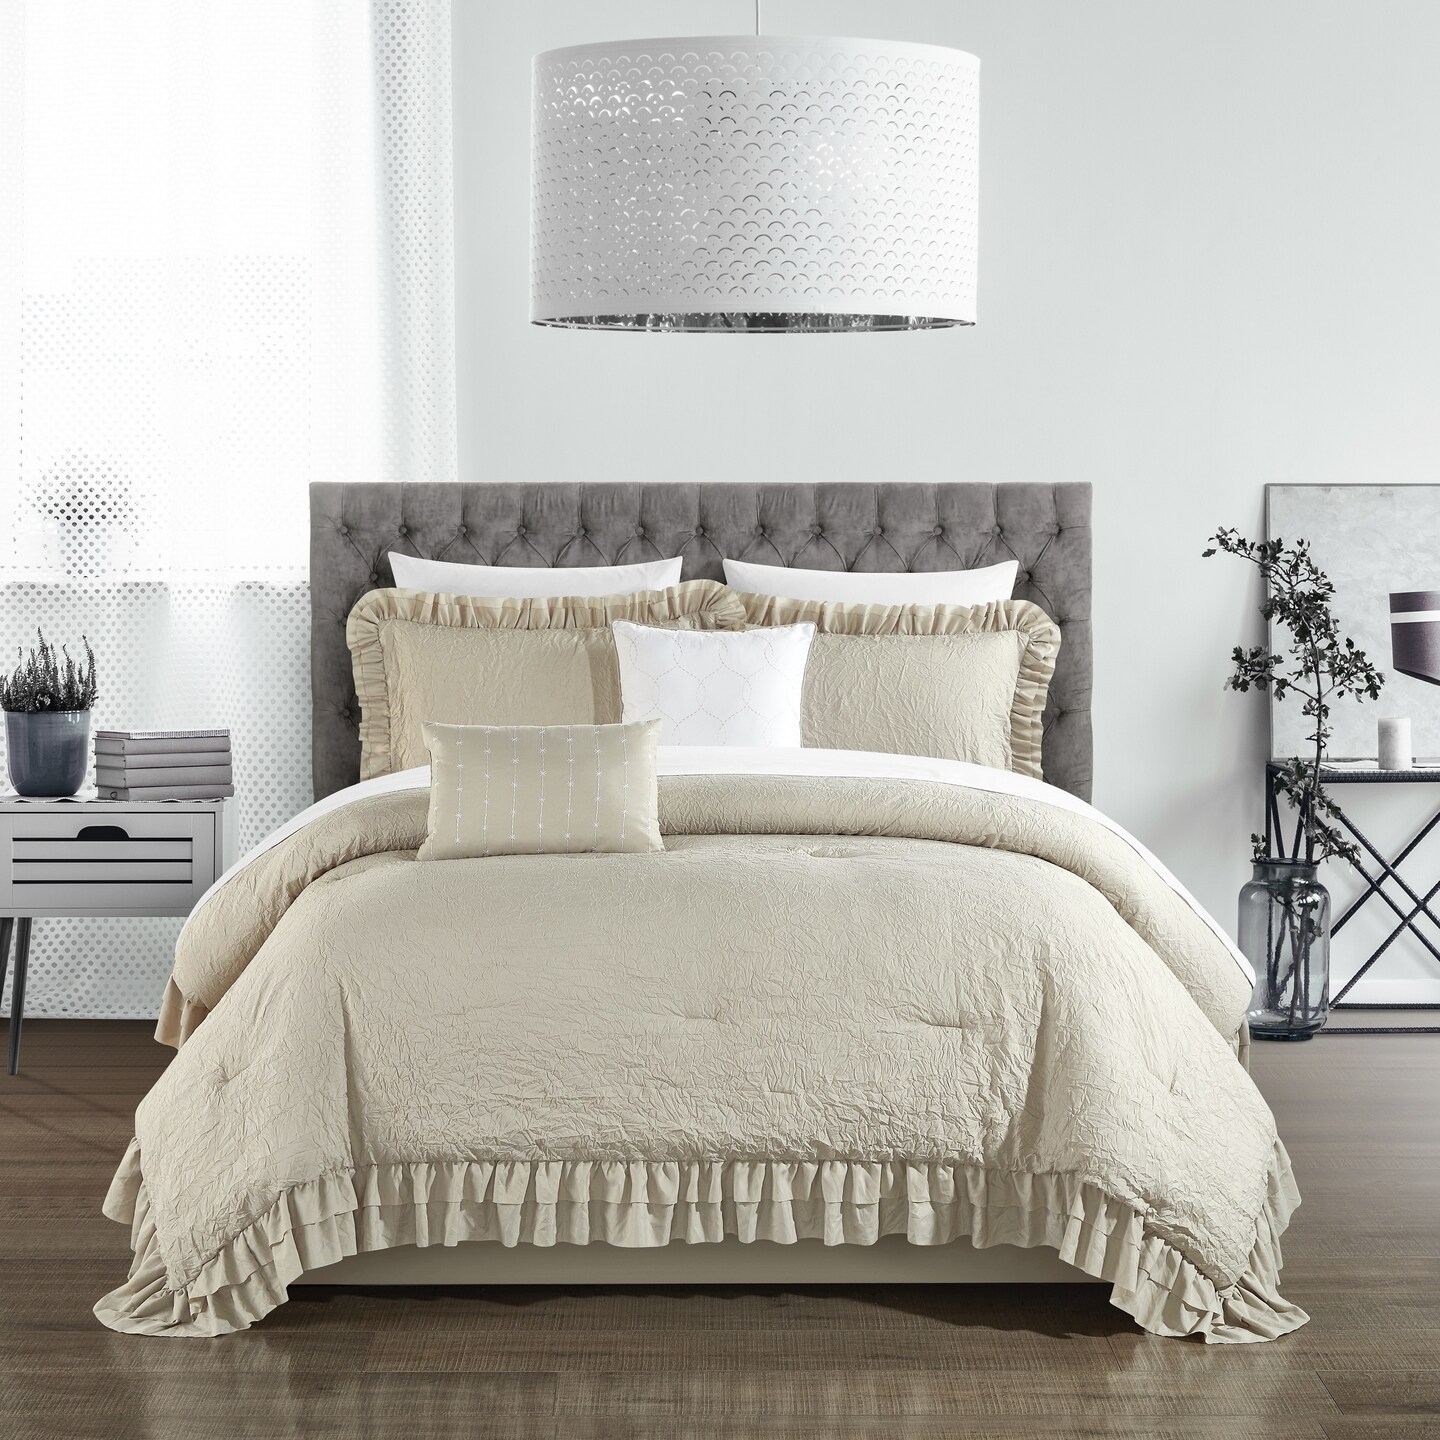 Chic Home 5 piece Kensley Comforter Set Washed Crinkle Ruffled Flange Border Design Bedding